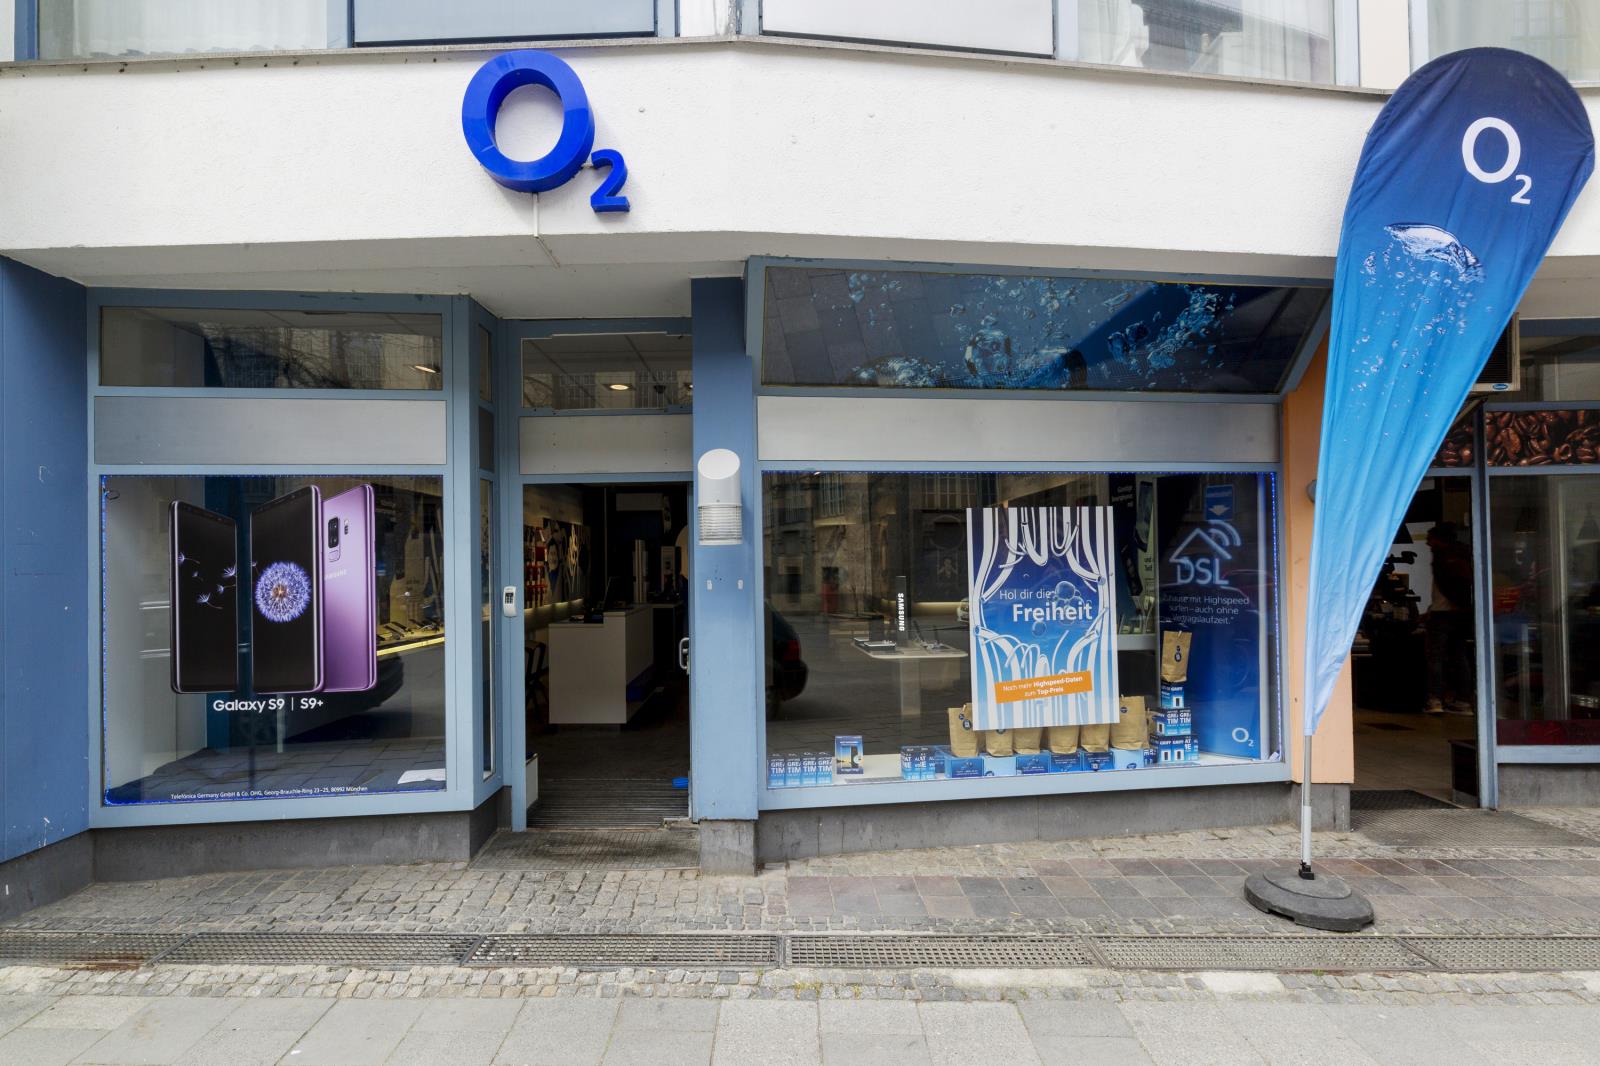 o2 Shop, Amalienstr. 87 in München